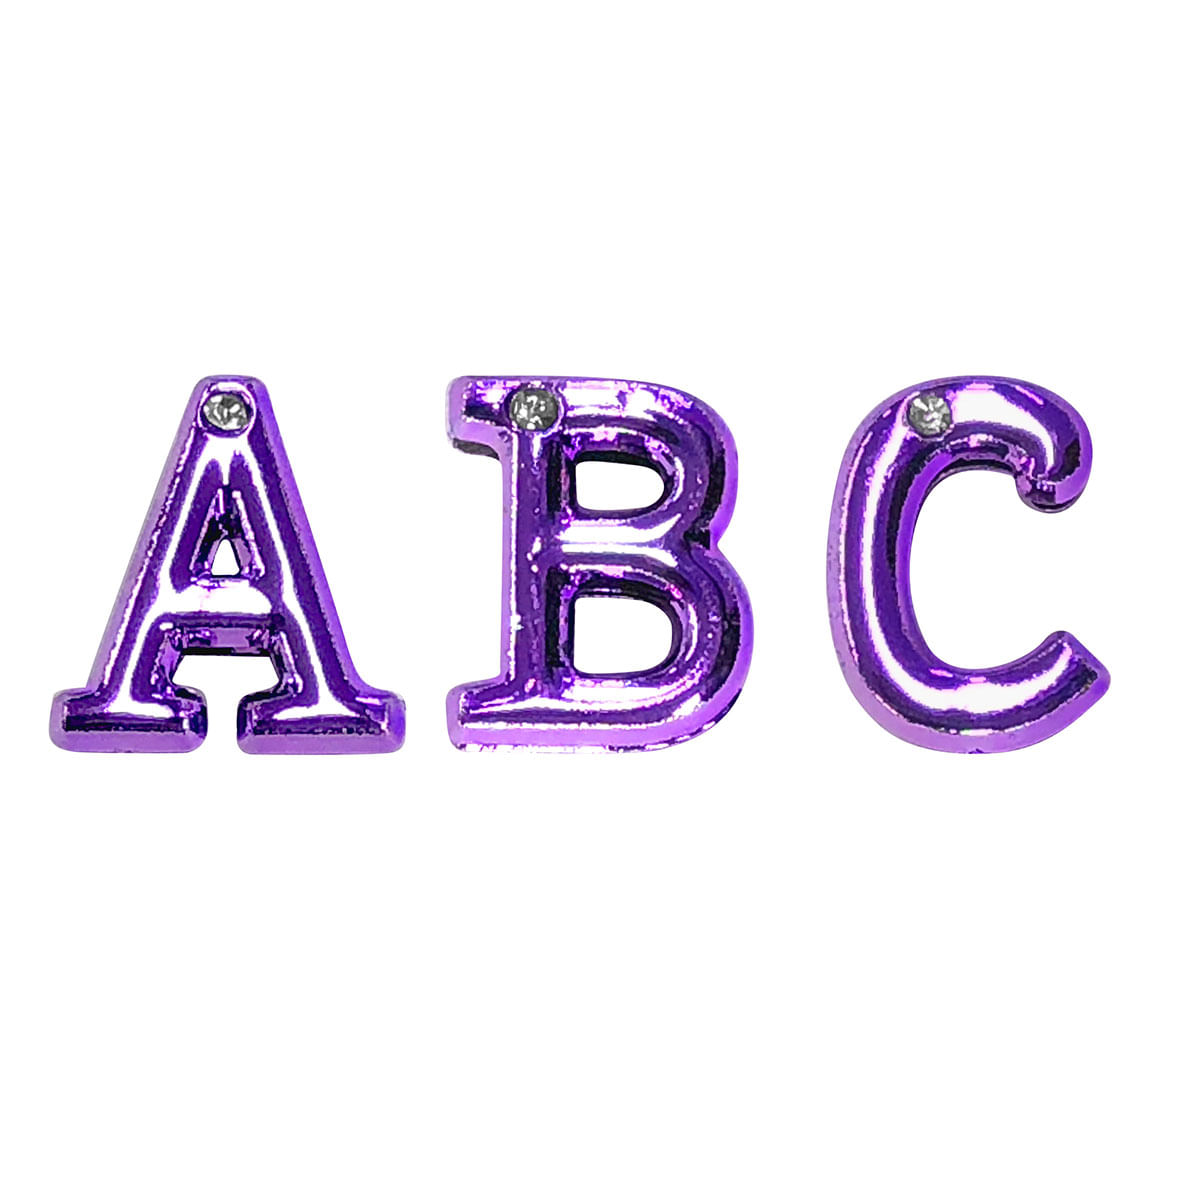 Letras em Metal Lilás com Strass para Personalização do Plug ABC Hard